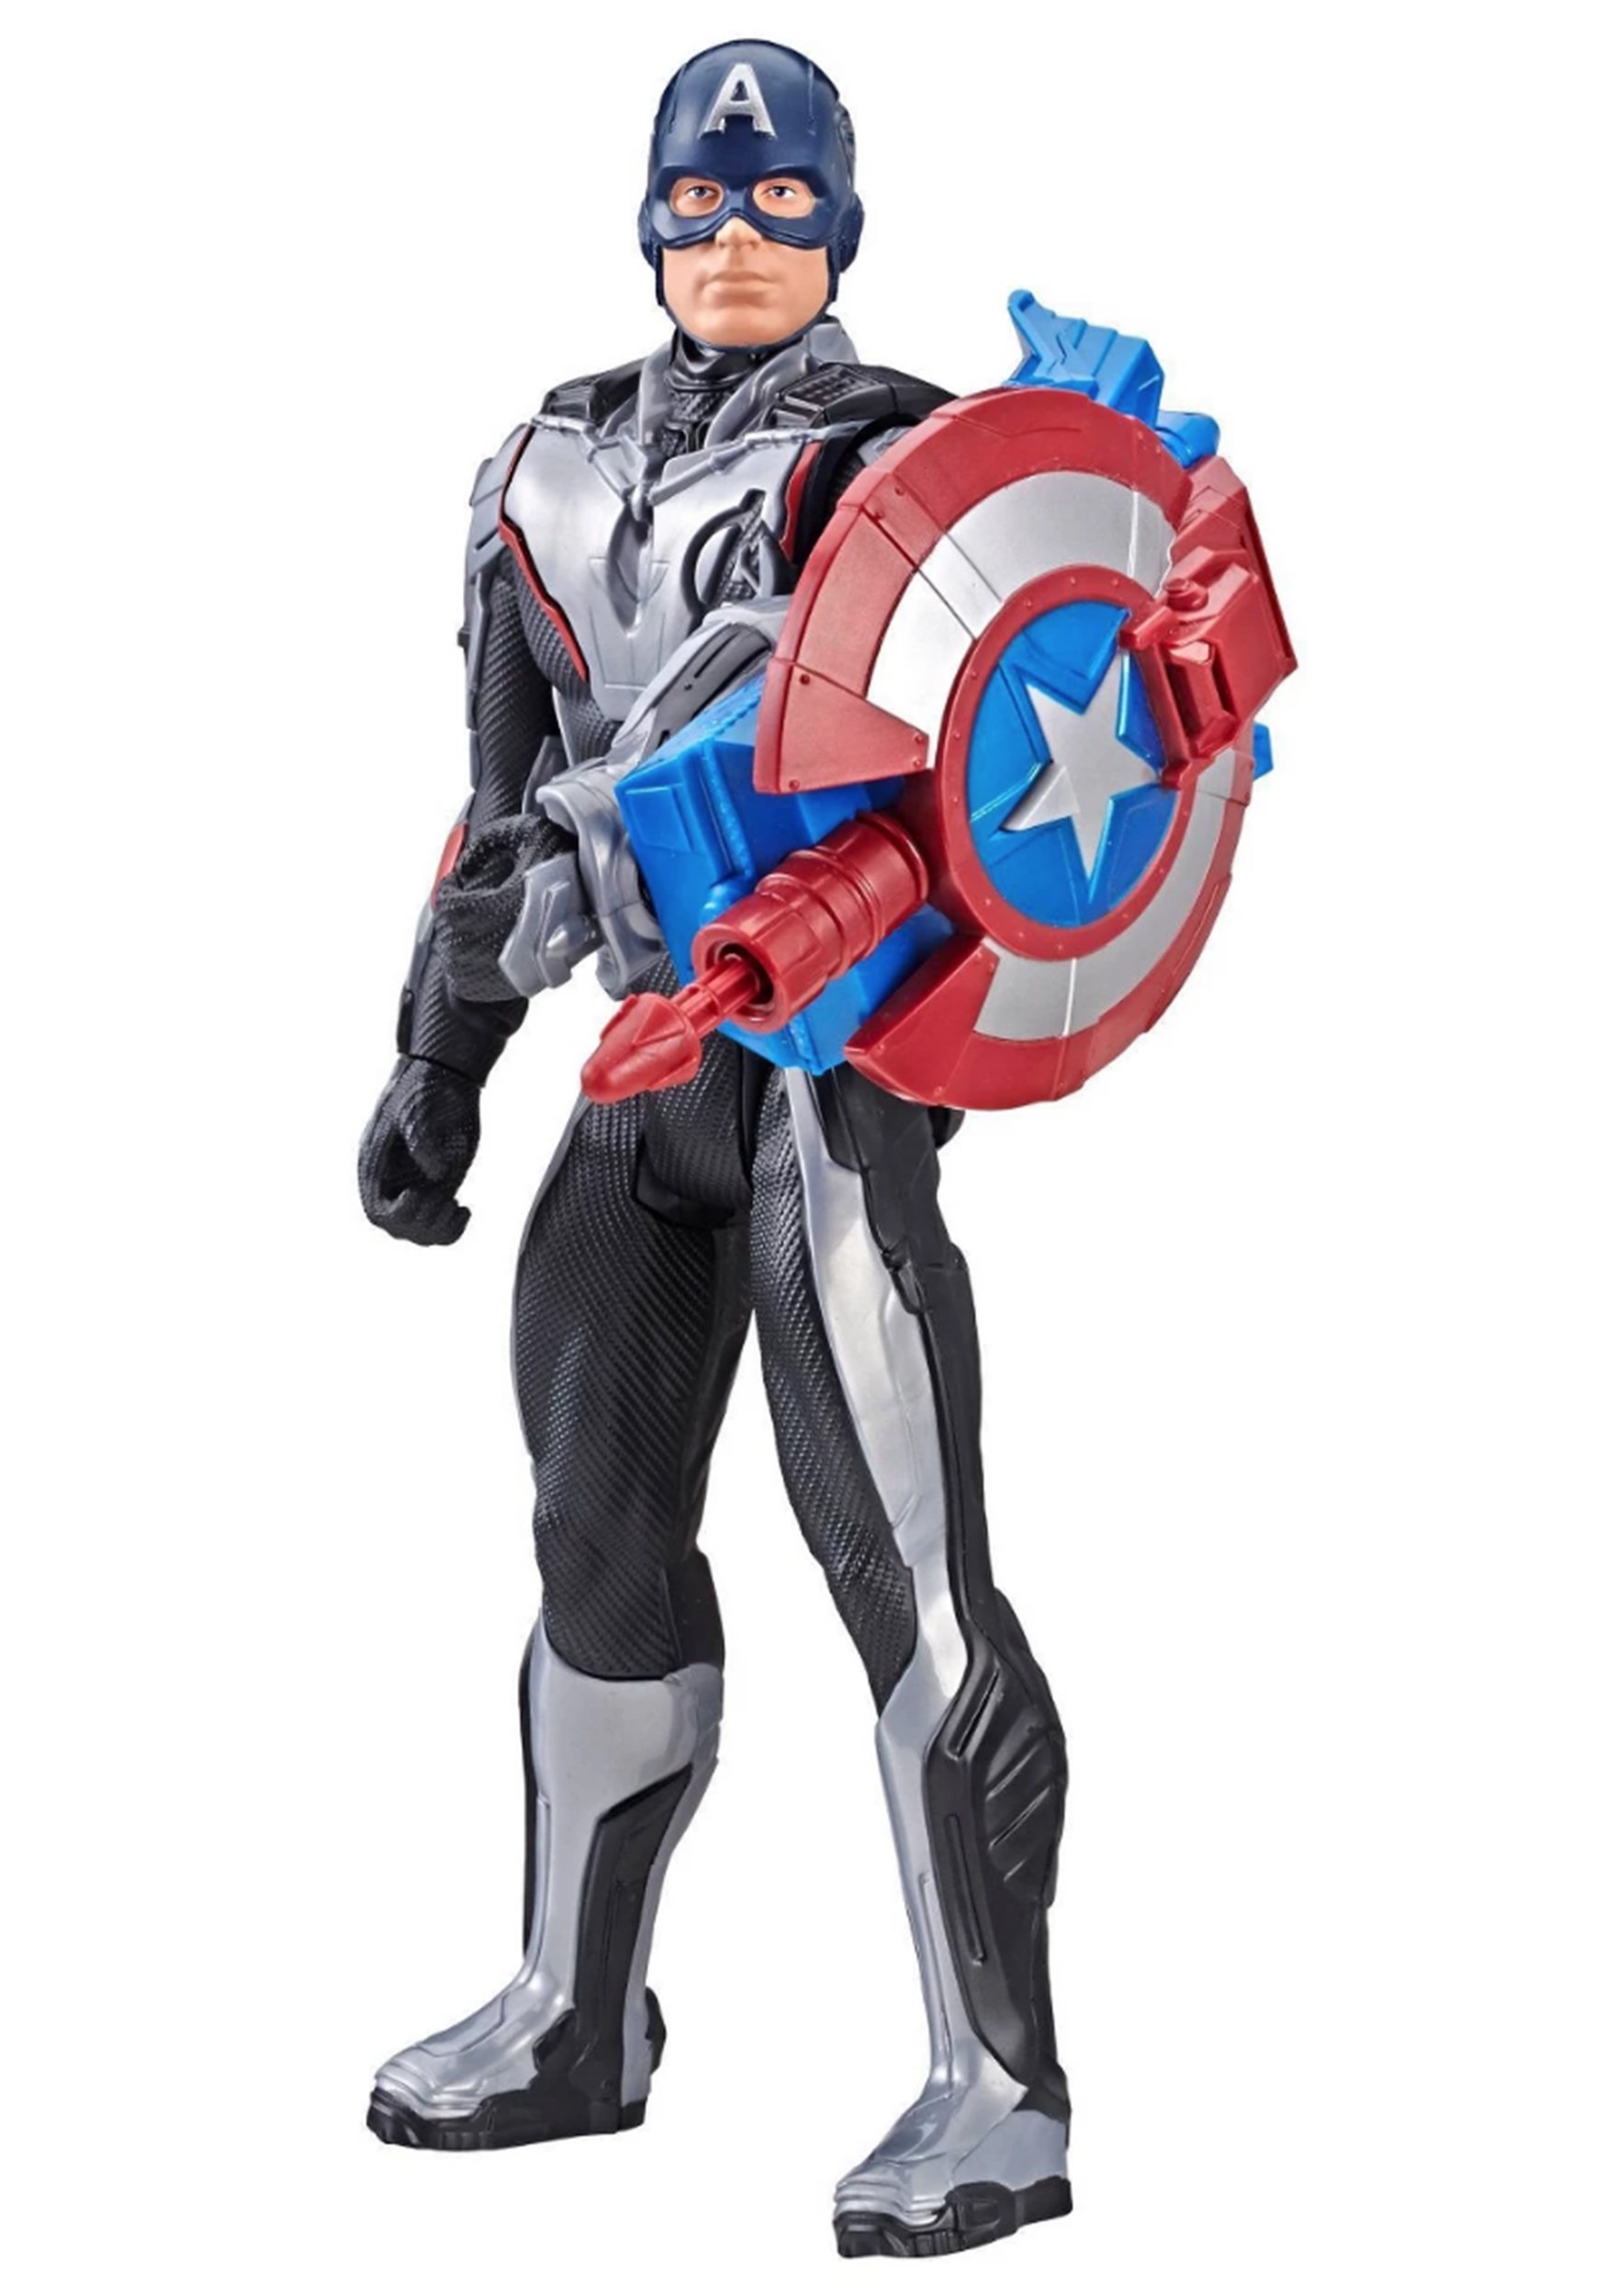 Avengers: Endgame Titan Hero Series Power FX Captain America